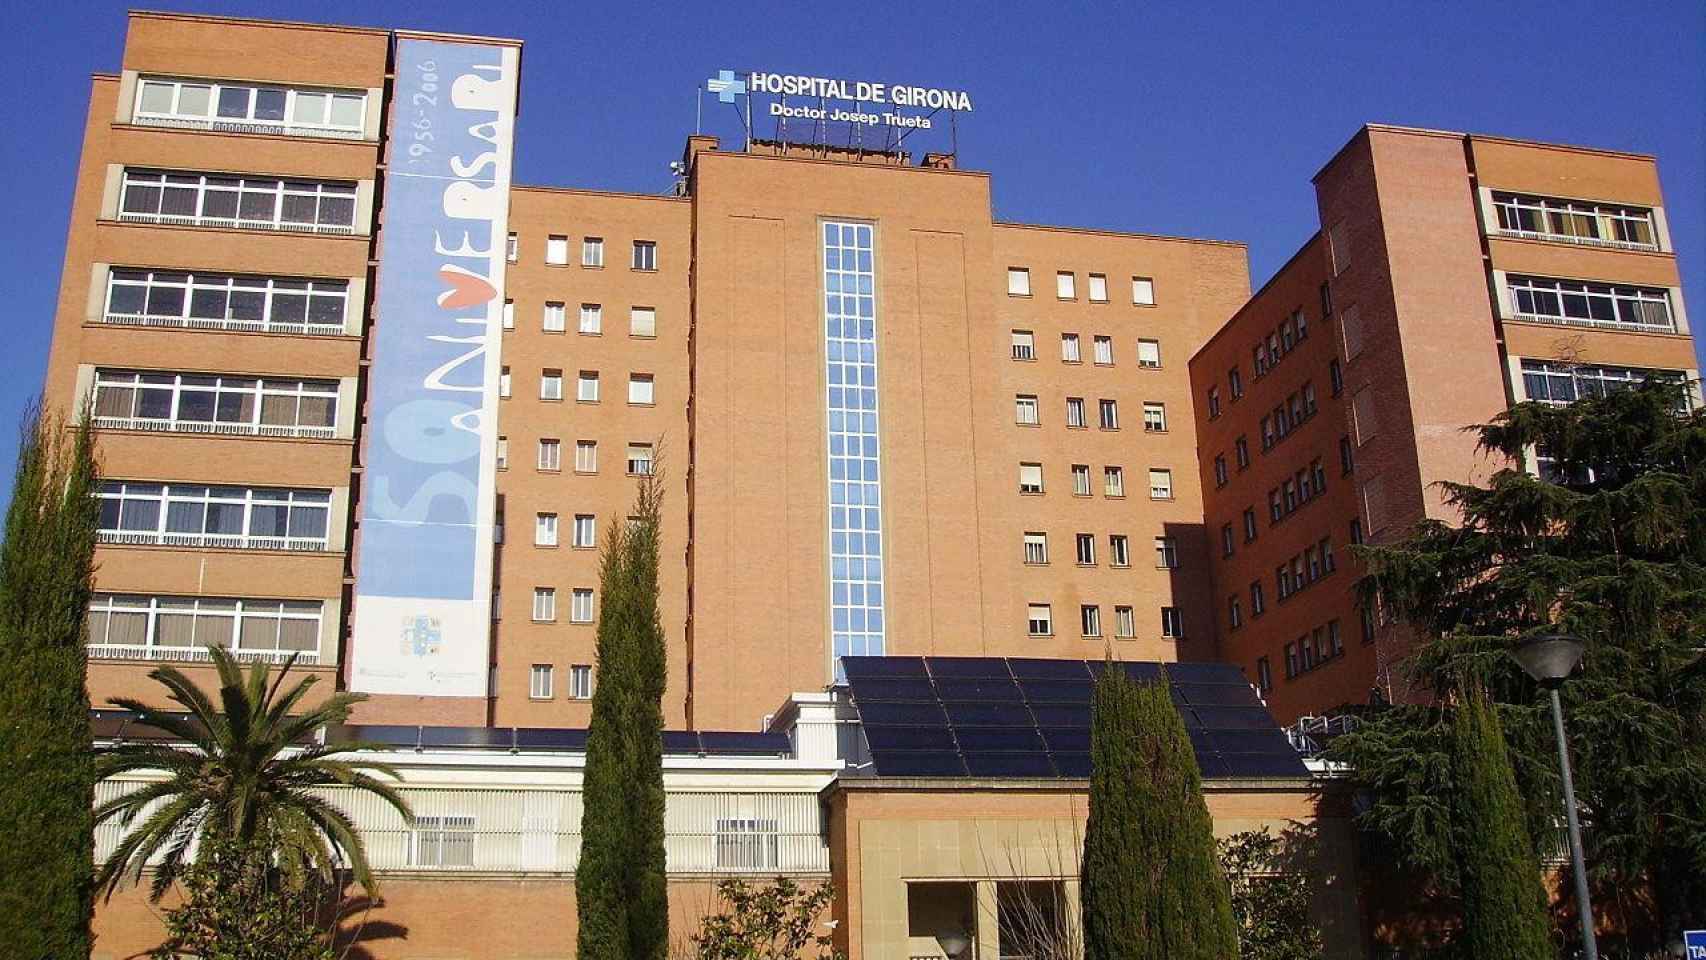 El Hospital de Girona Josep Trueta en imagen de archivo